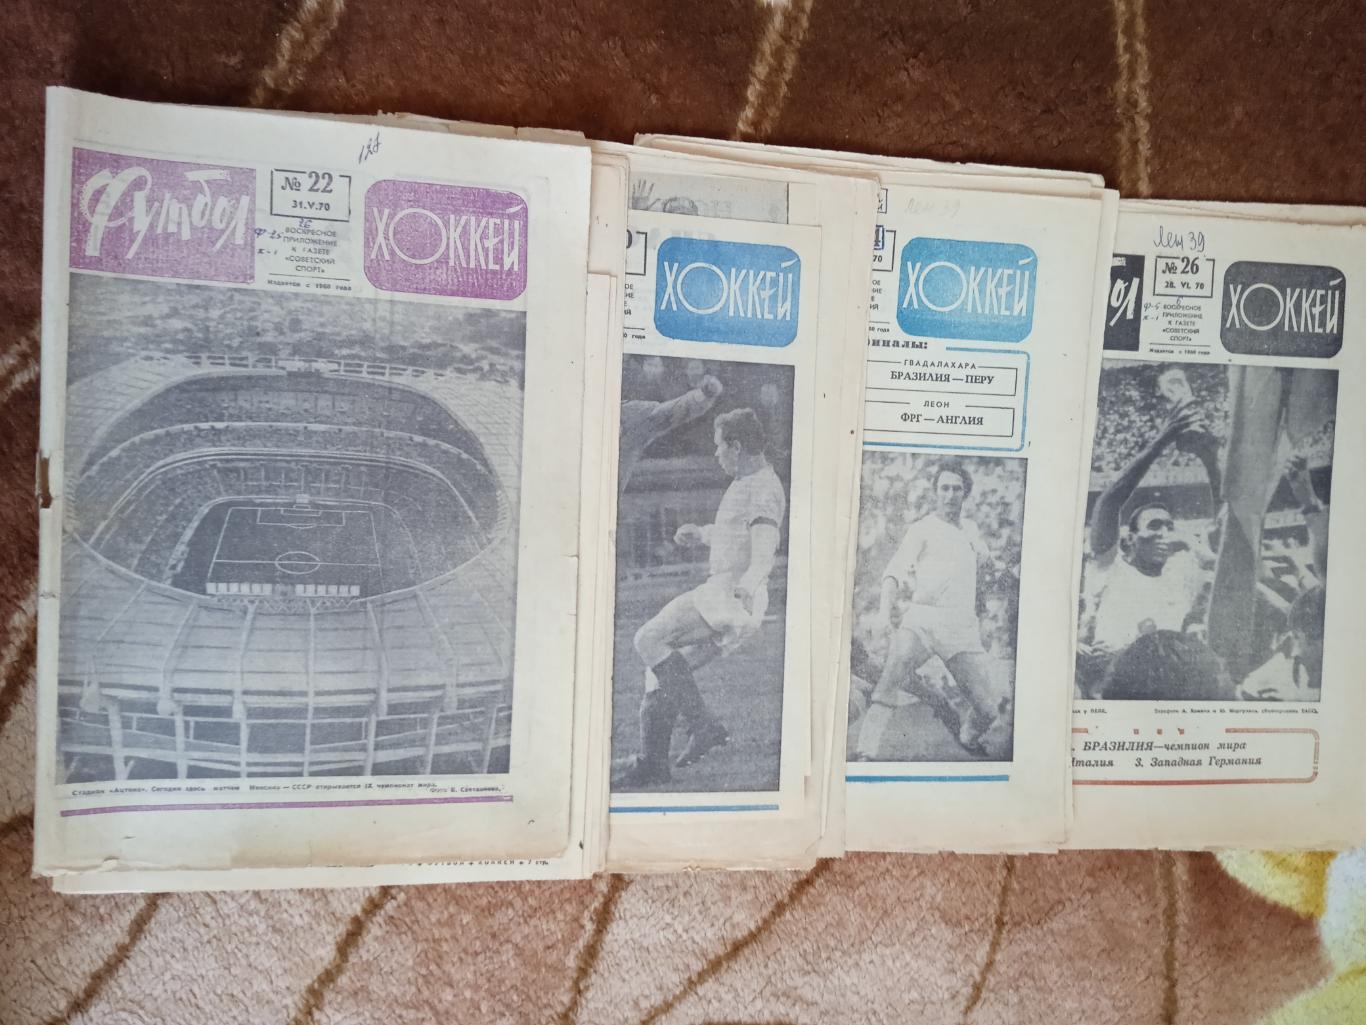 Статья.Фото.Футбол.Чемпионат мира 1970.Мексика.Газета Футбол-Хоккей.